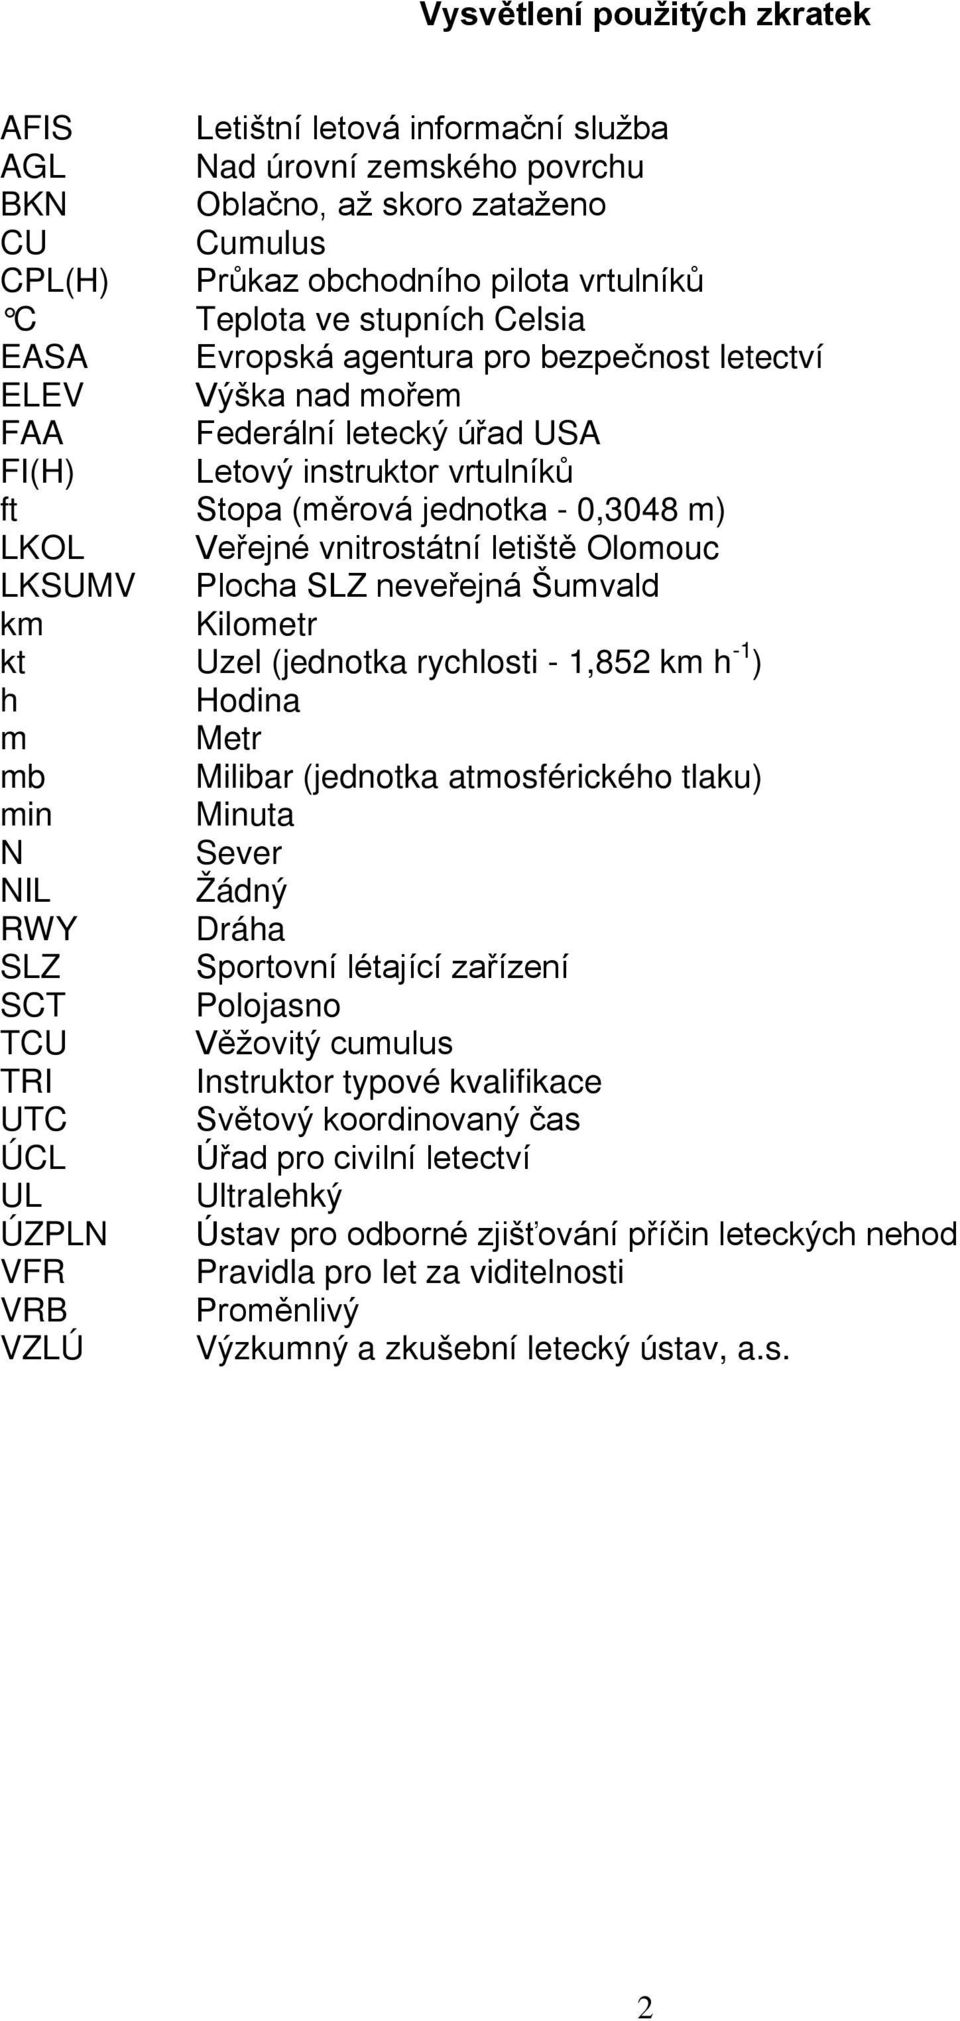 vnitrostátní letiště Olomouc LKSUMV Plocha SLZ neveřejná Šumvald km Kilometr kt Uzel (jednotka rychlosti - 1,852 km h -1 ) h Hodina m Metr mb Milibar (jednotka atmosférického tlaku) min Minuta N